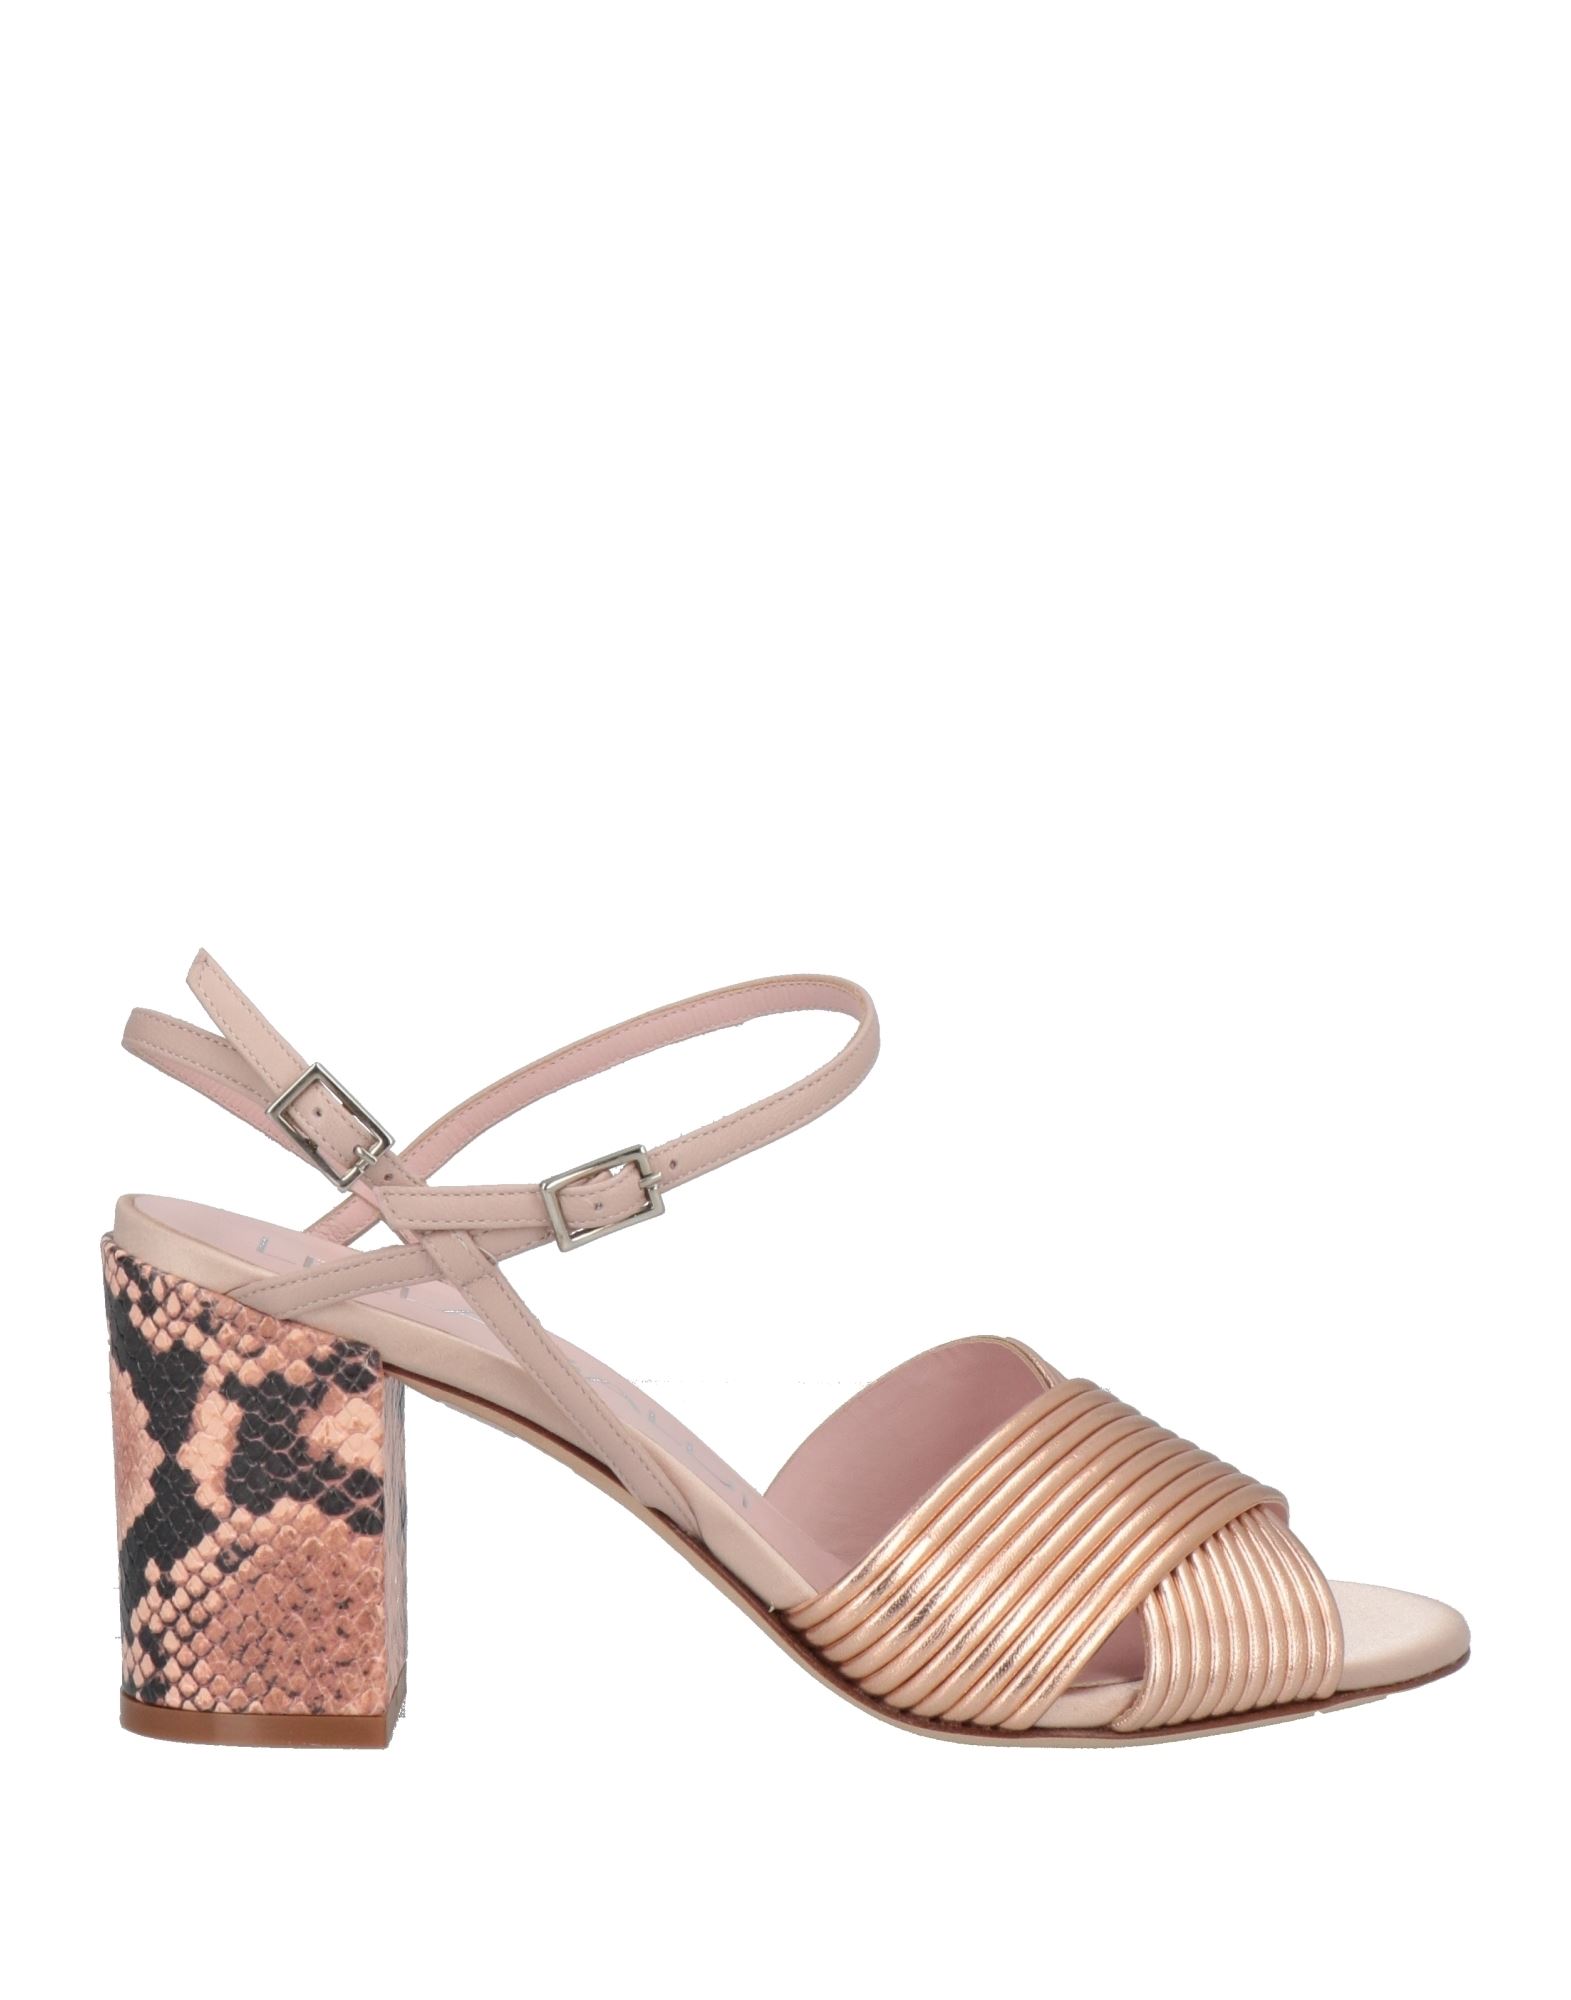 Lella Baldi Sandals In Rose Gold